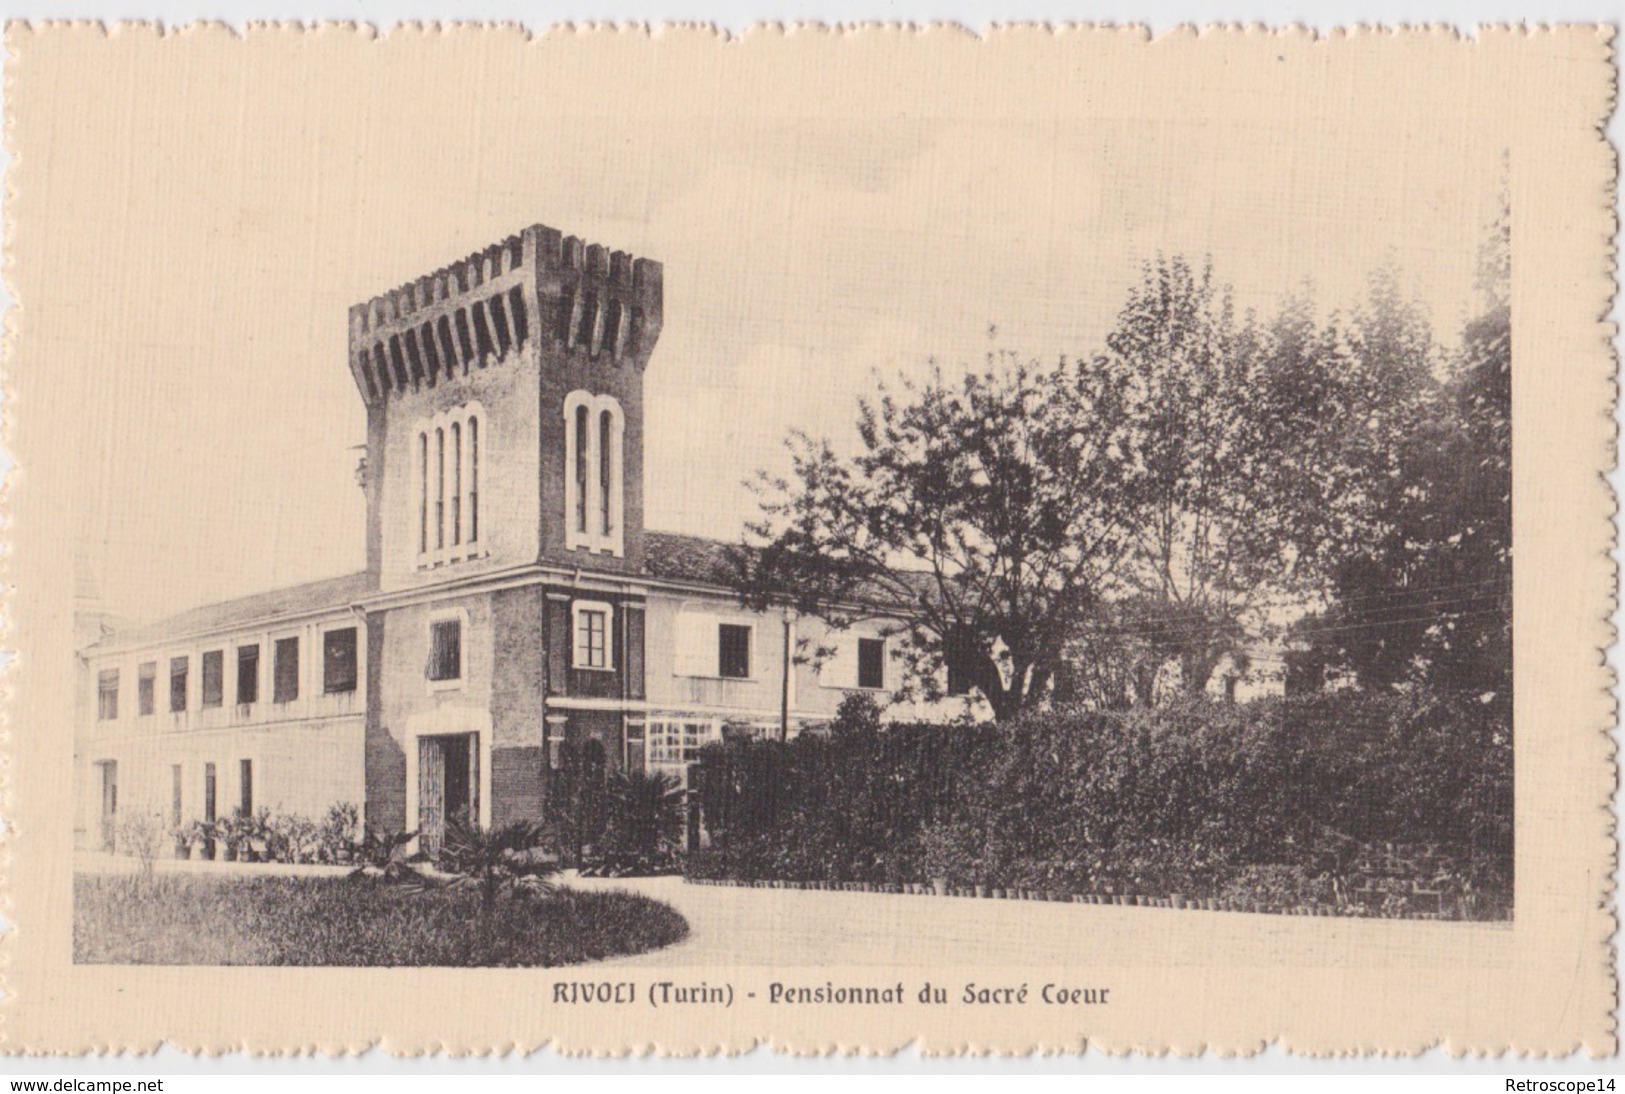 CPA Cartolina Postale, RIVOLI, SACRO CUORE N°3, Circa 1910. Crosazzo. Torino, Torinese, Piemonte. Piemont, Italie. - Rivoli